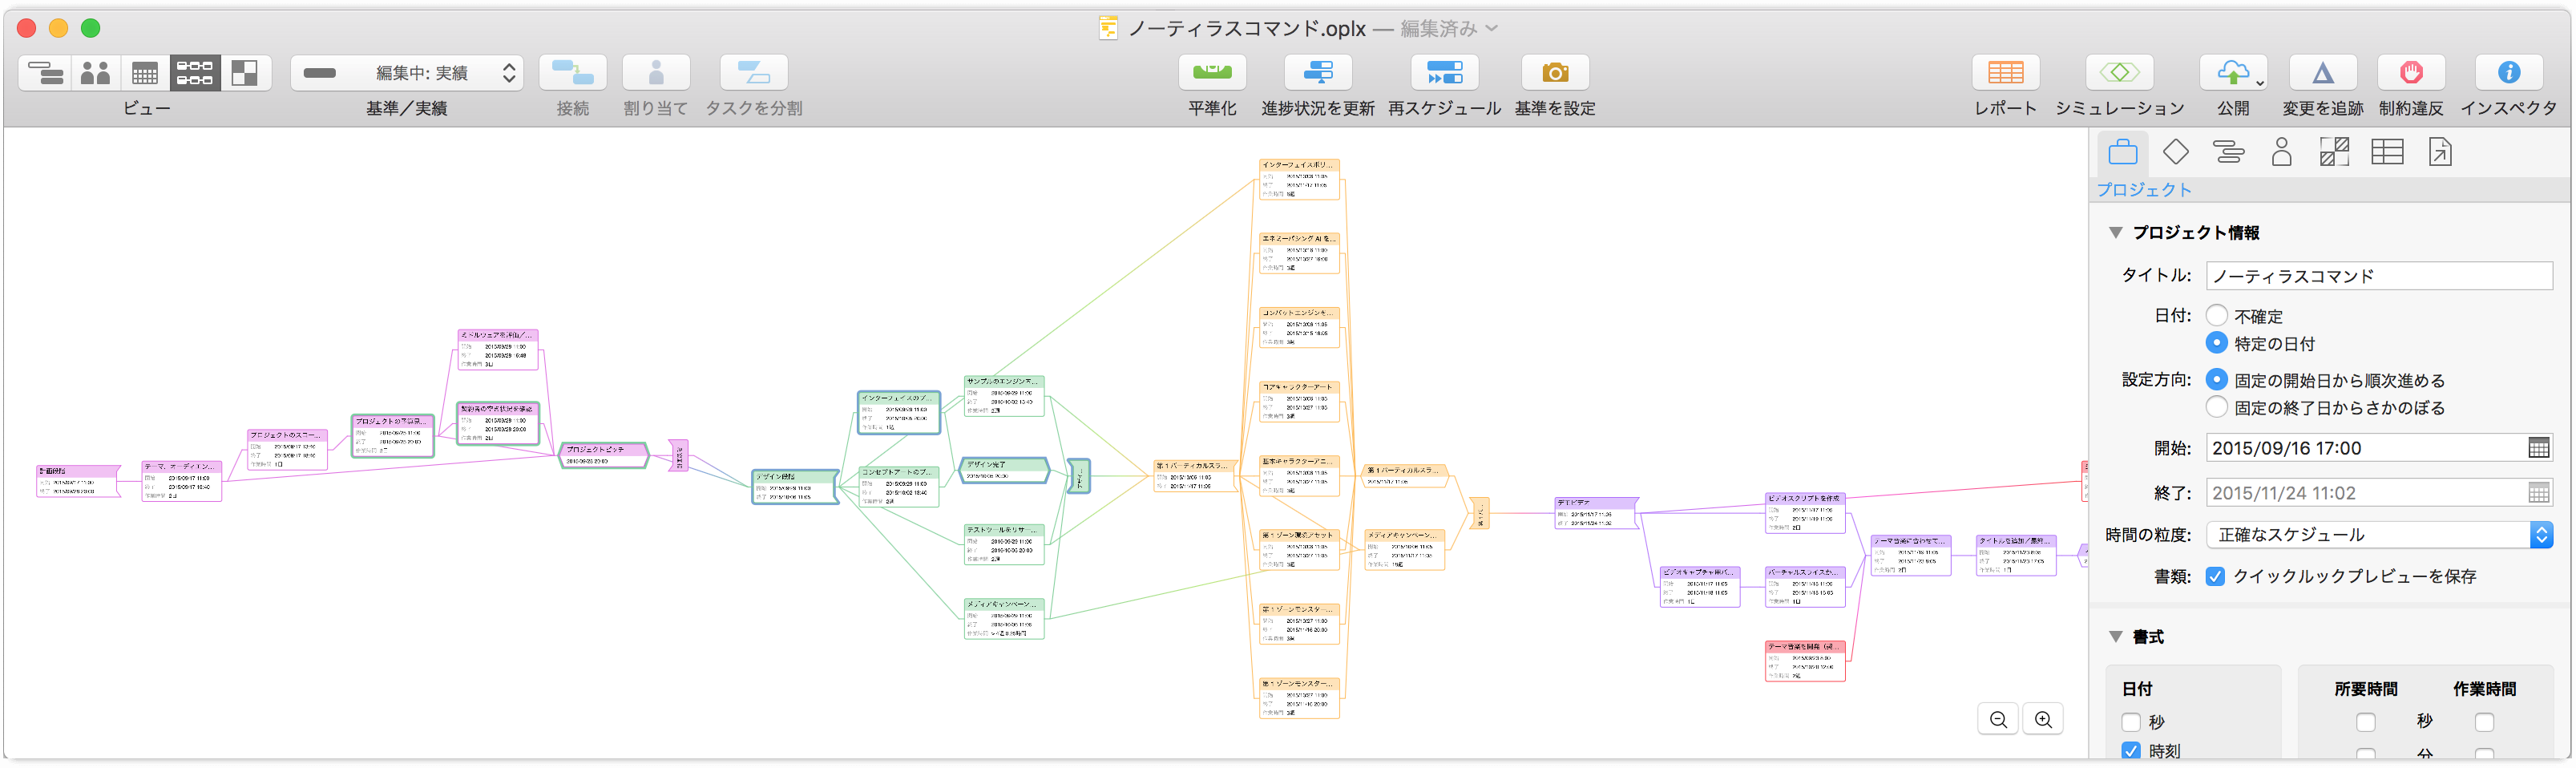 OmniPlan 3 のネットワークビューのプロジェクト